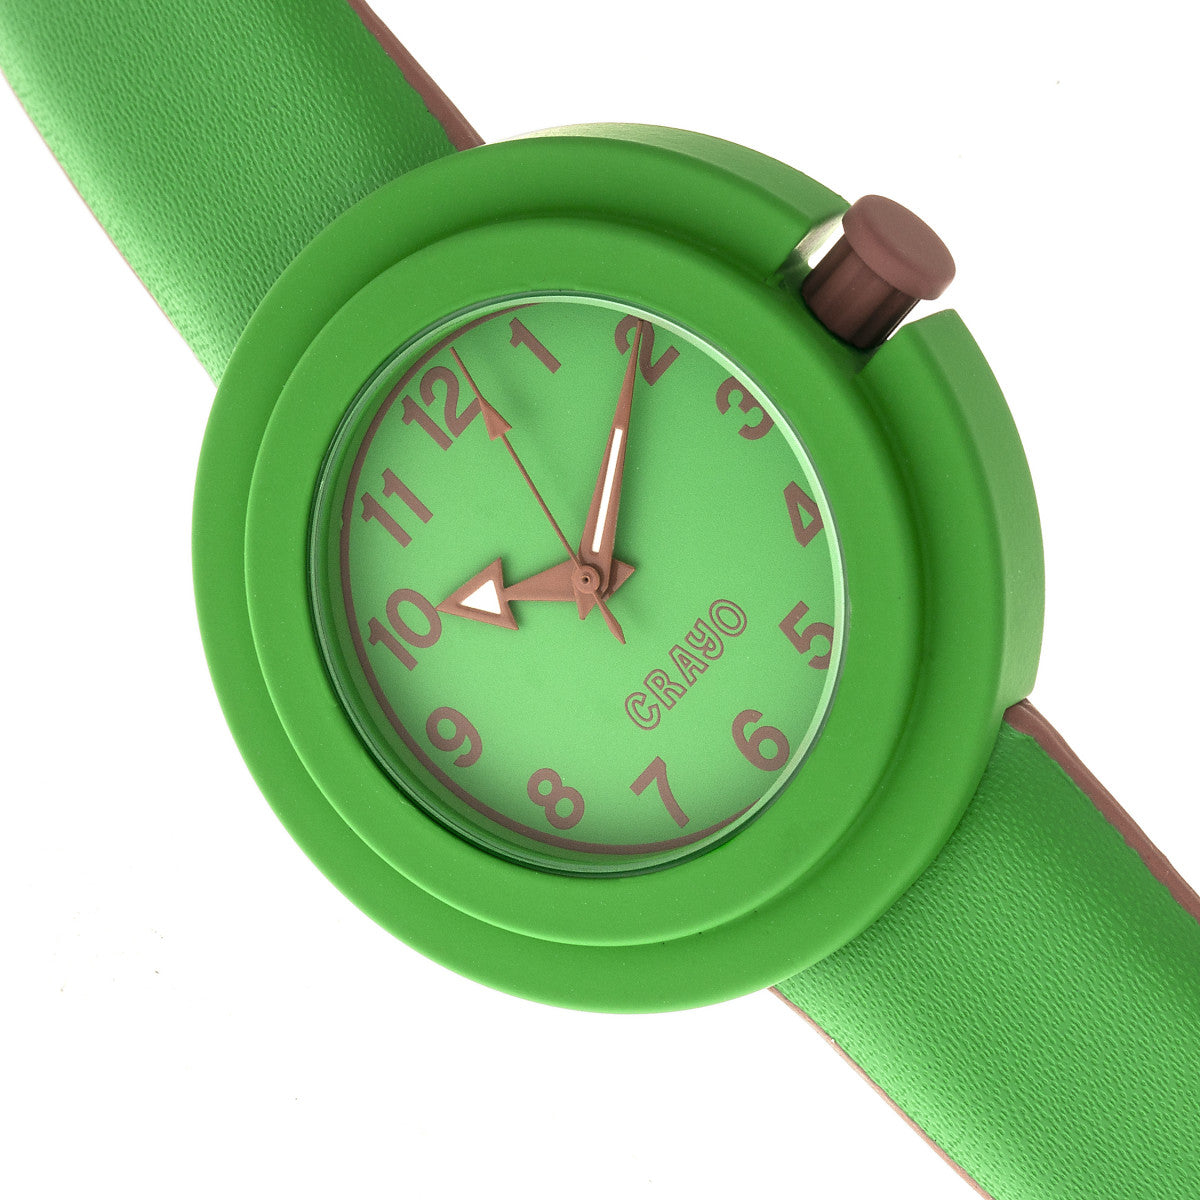 Crayo Equinox Unisex Watch - Green/Brown - CRACR2803